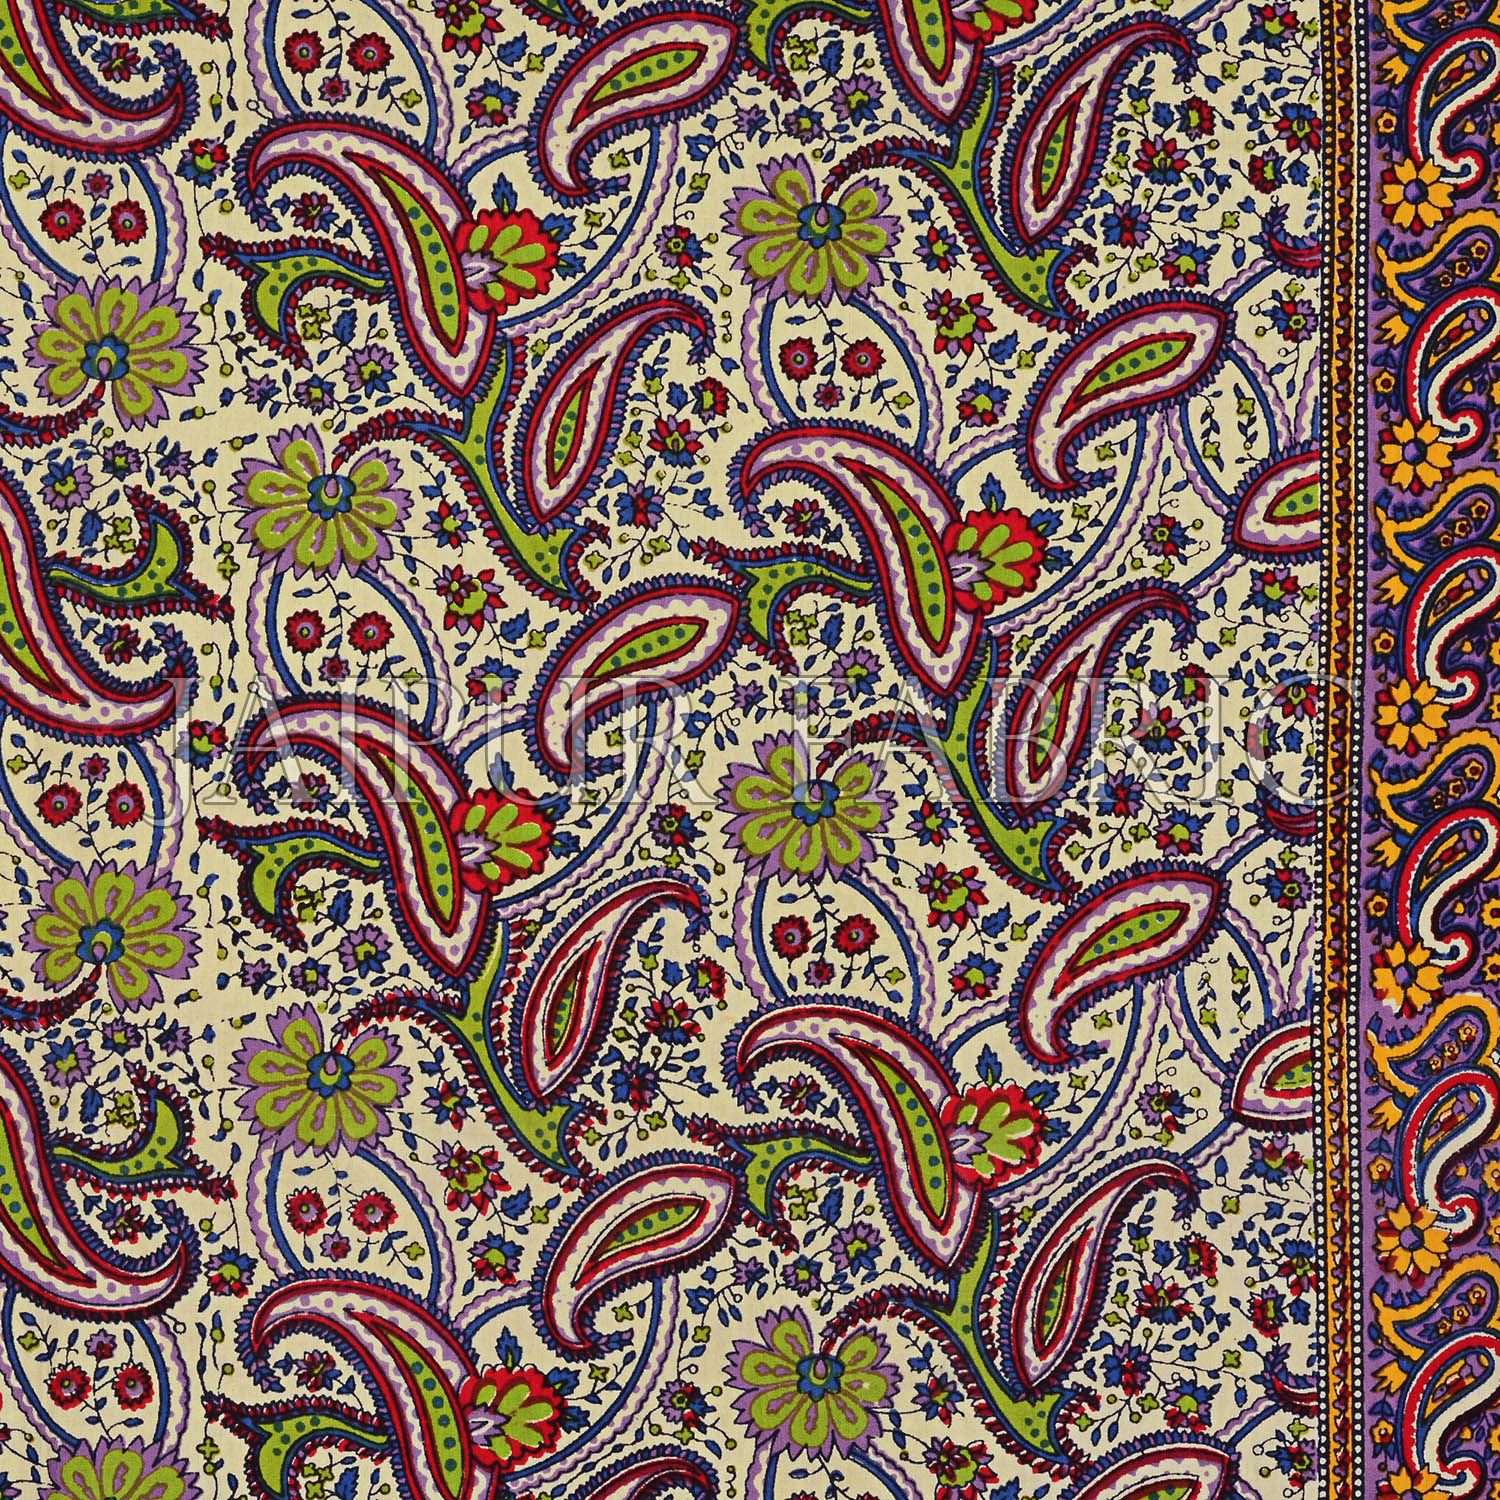 Orange Rajasthani Jaipuri Printed Cotton Double Bed Sheet